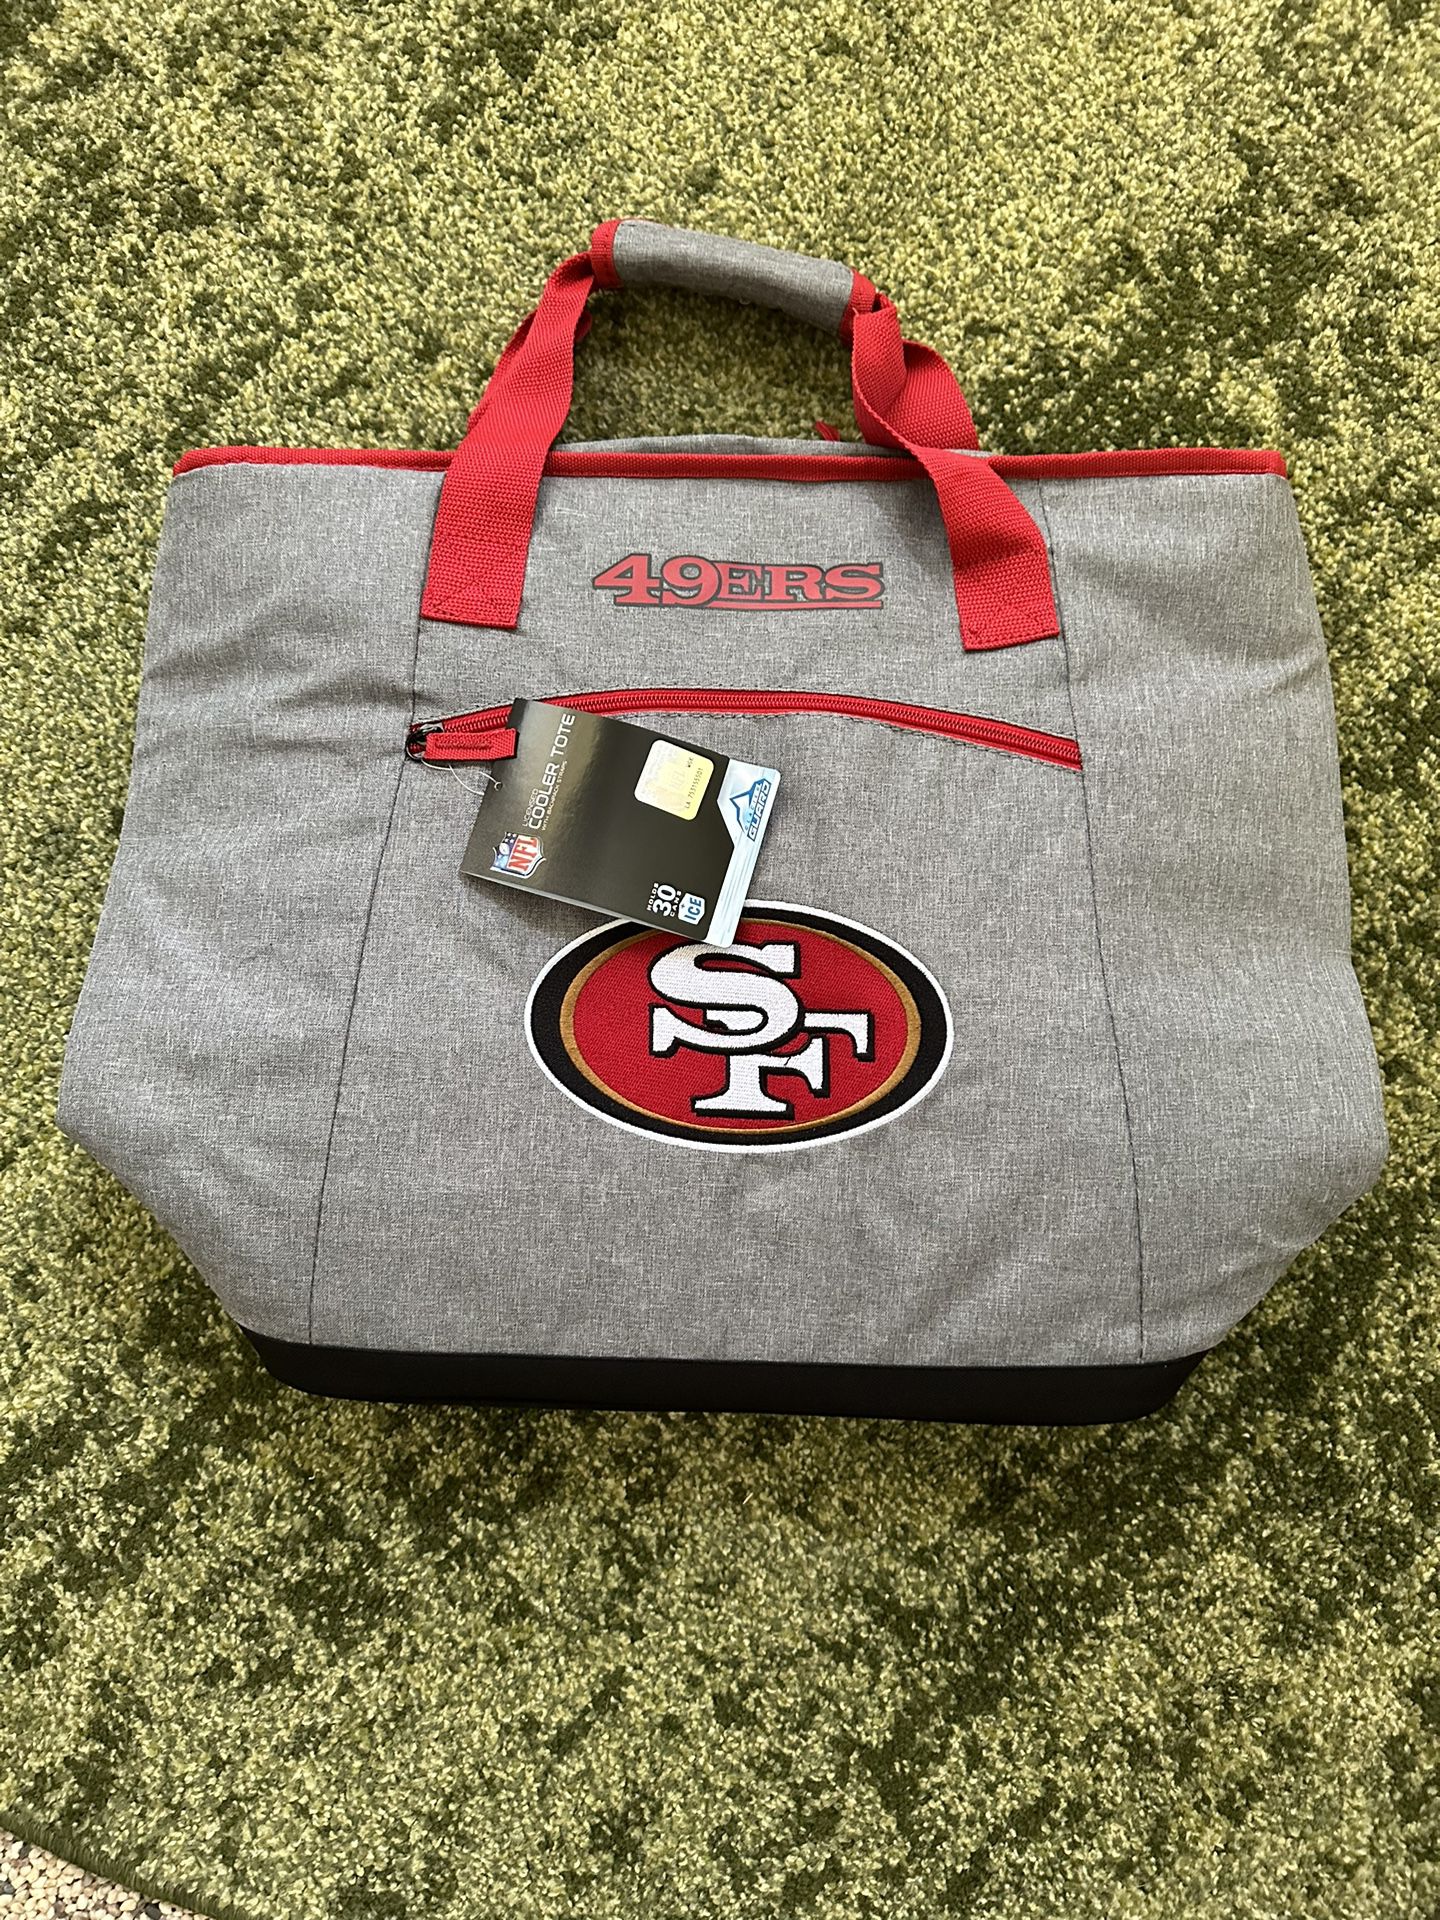 San Francisco 49er cooler Tote Bag Holds 30 Cans 